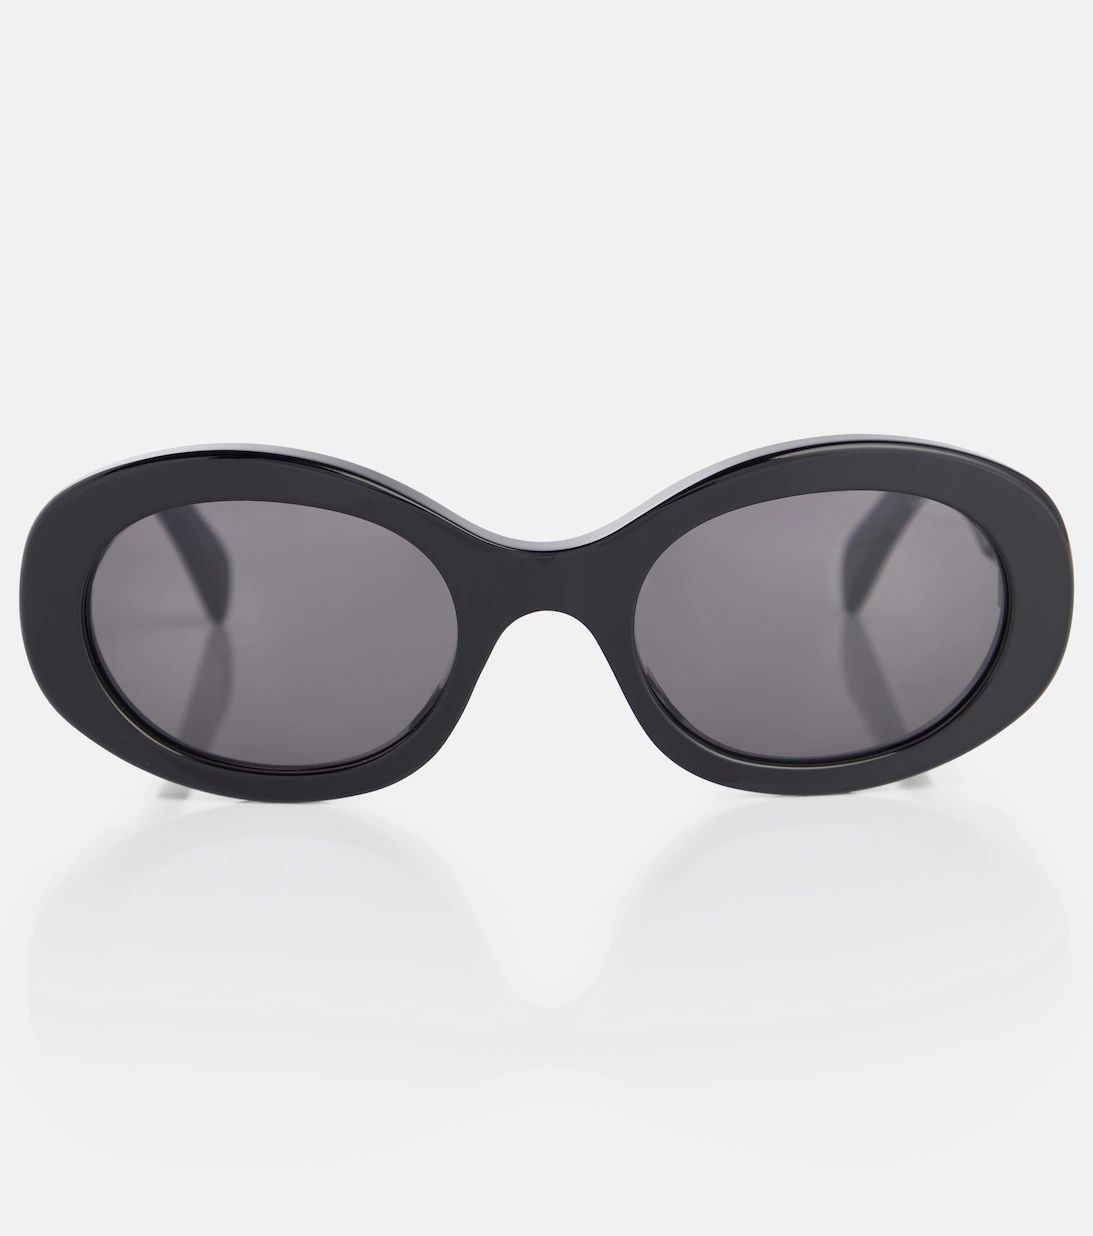 Triomphe 01 oval sunglasses | Mytheresa (INTL)